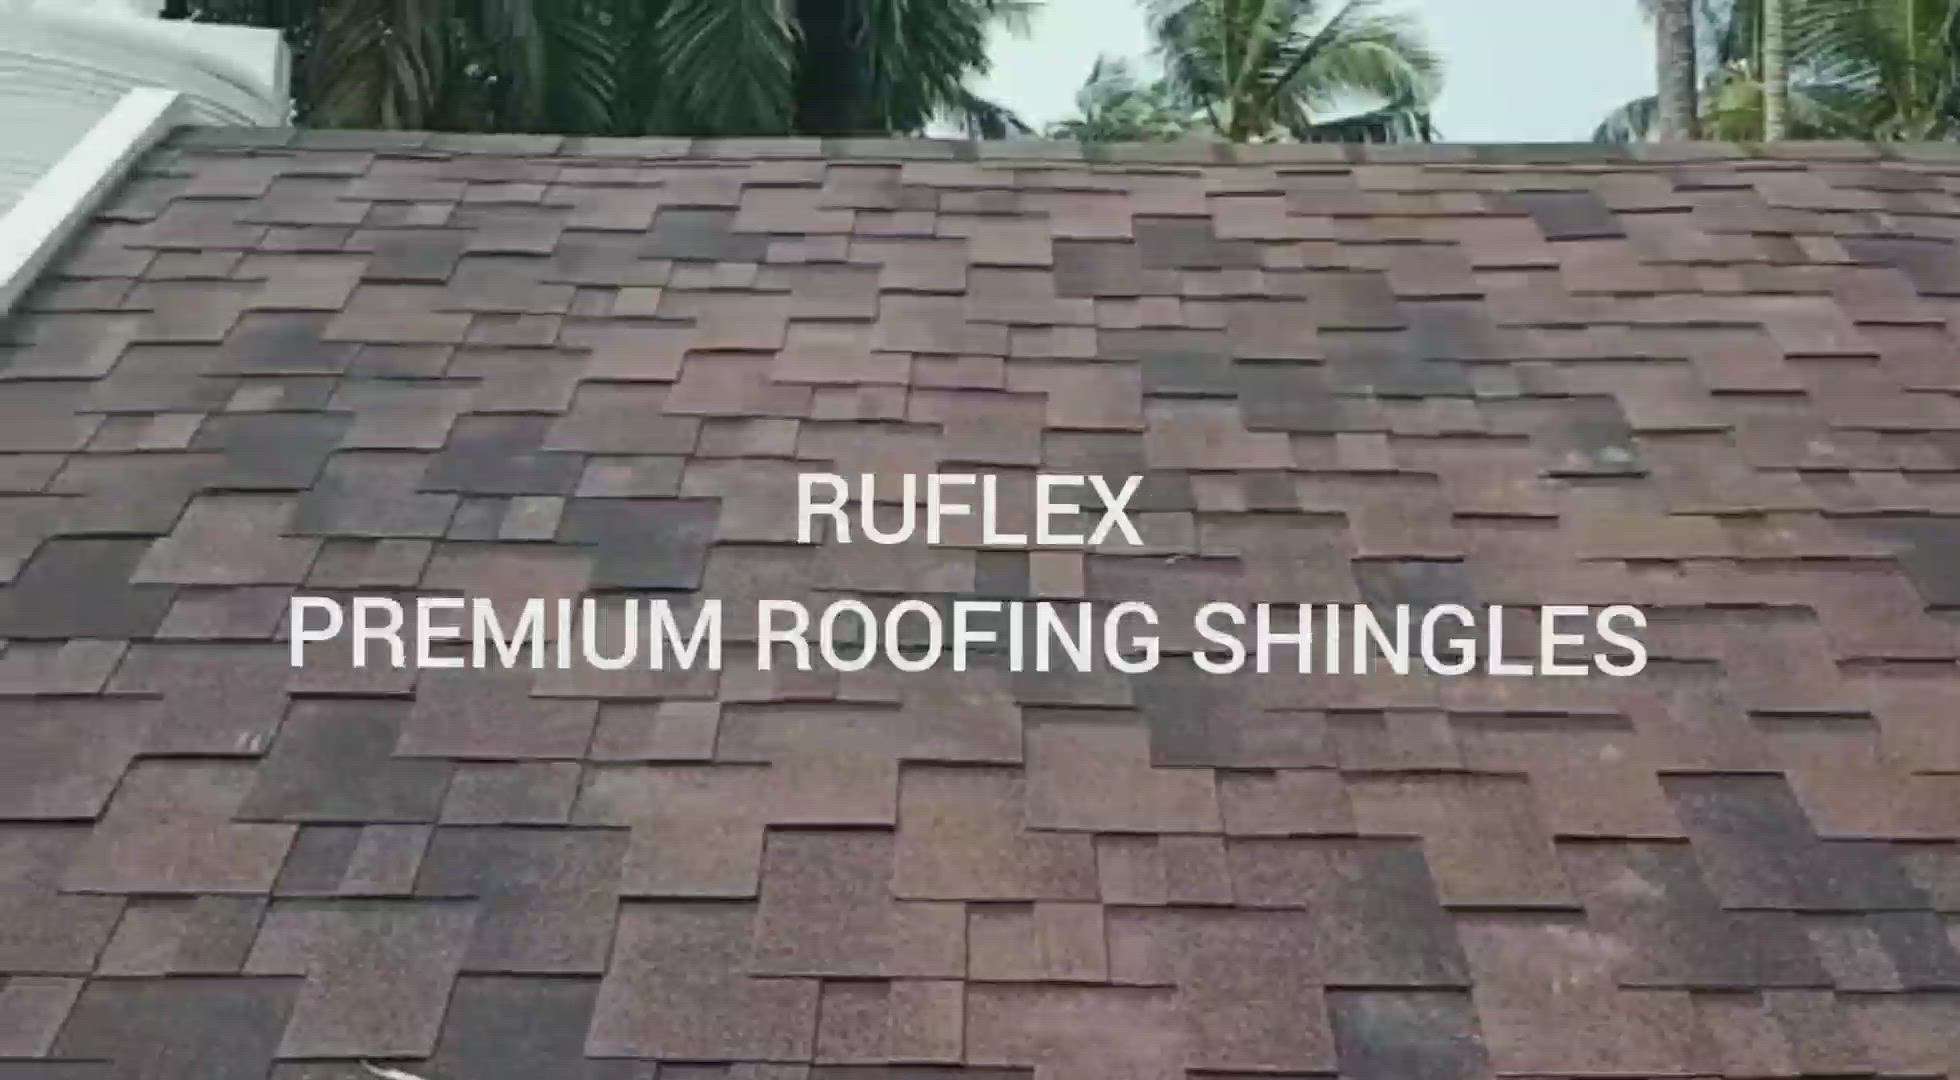 RUFLEX PREMIUM ROOFING SHINGLES.  Made in RUSSIA.  Premium Quality Roofing Shingles.  Call or Whatsapp 953 953 4545